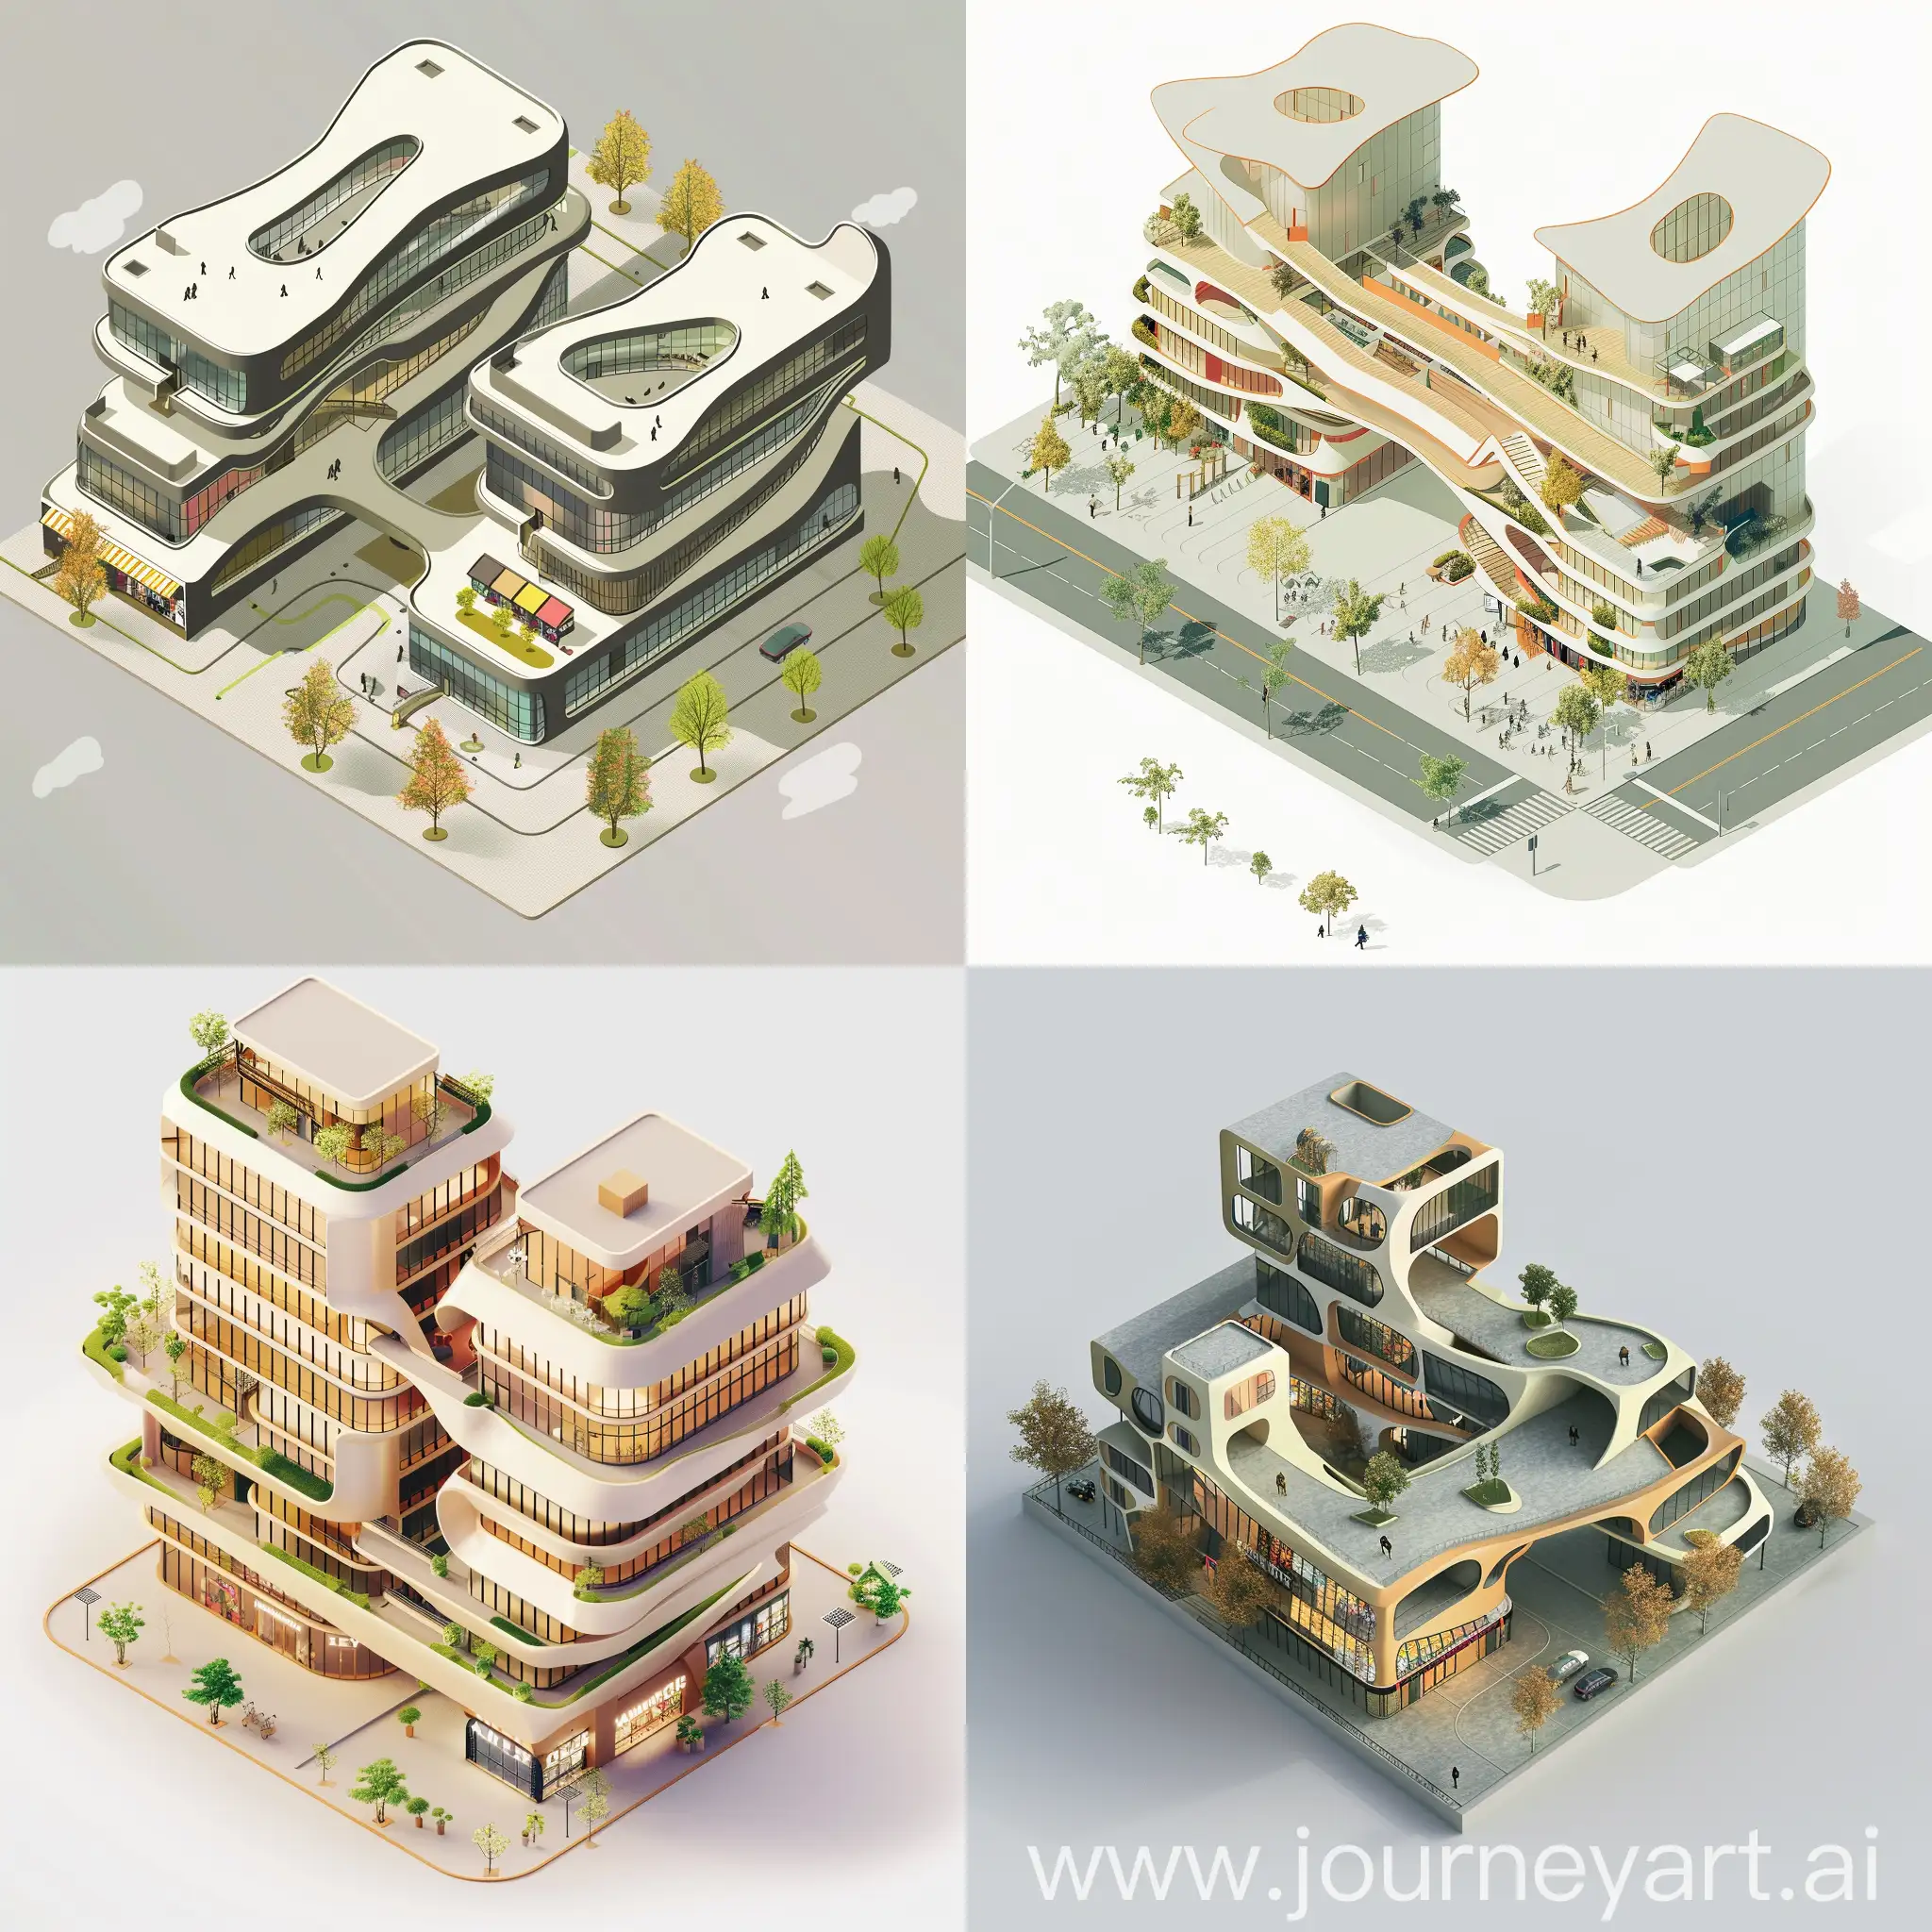 Una imagen en isométrico del diseño de  un edificio híbrido, que sean planta baja de comercio, y 2 edificios, al estilo moderno que una los edificios con puenws, que tenga forma organica